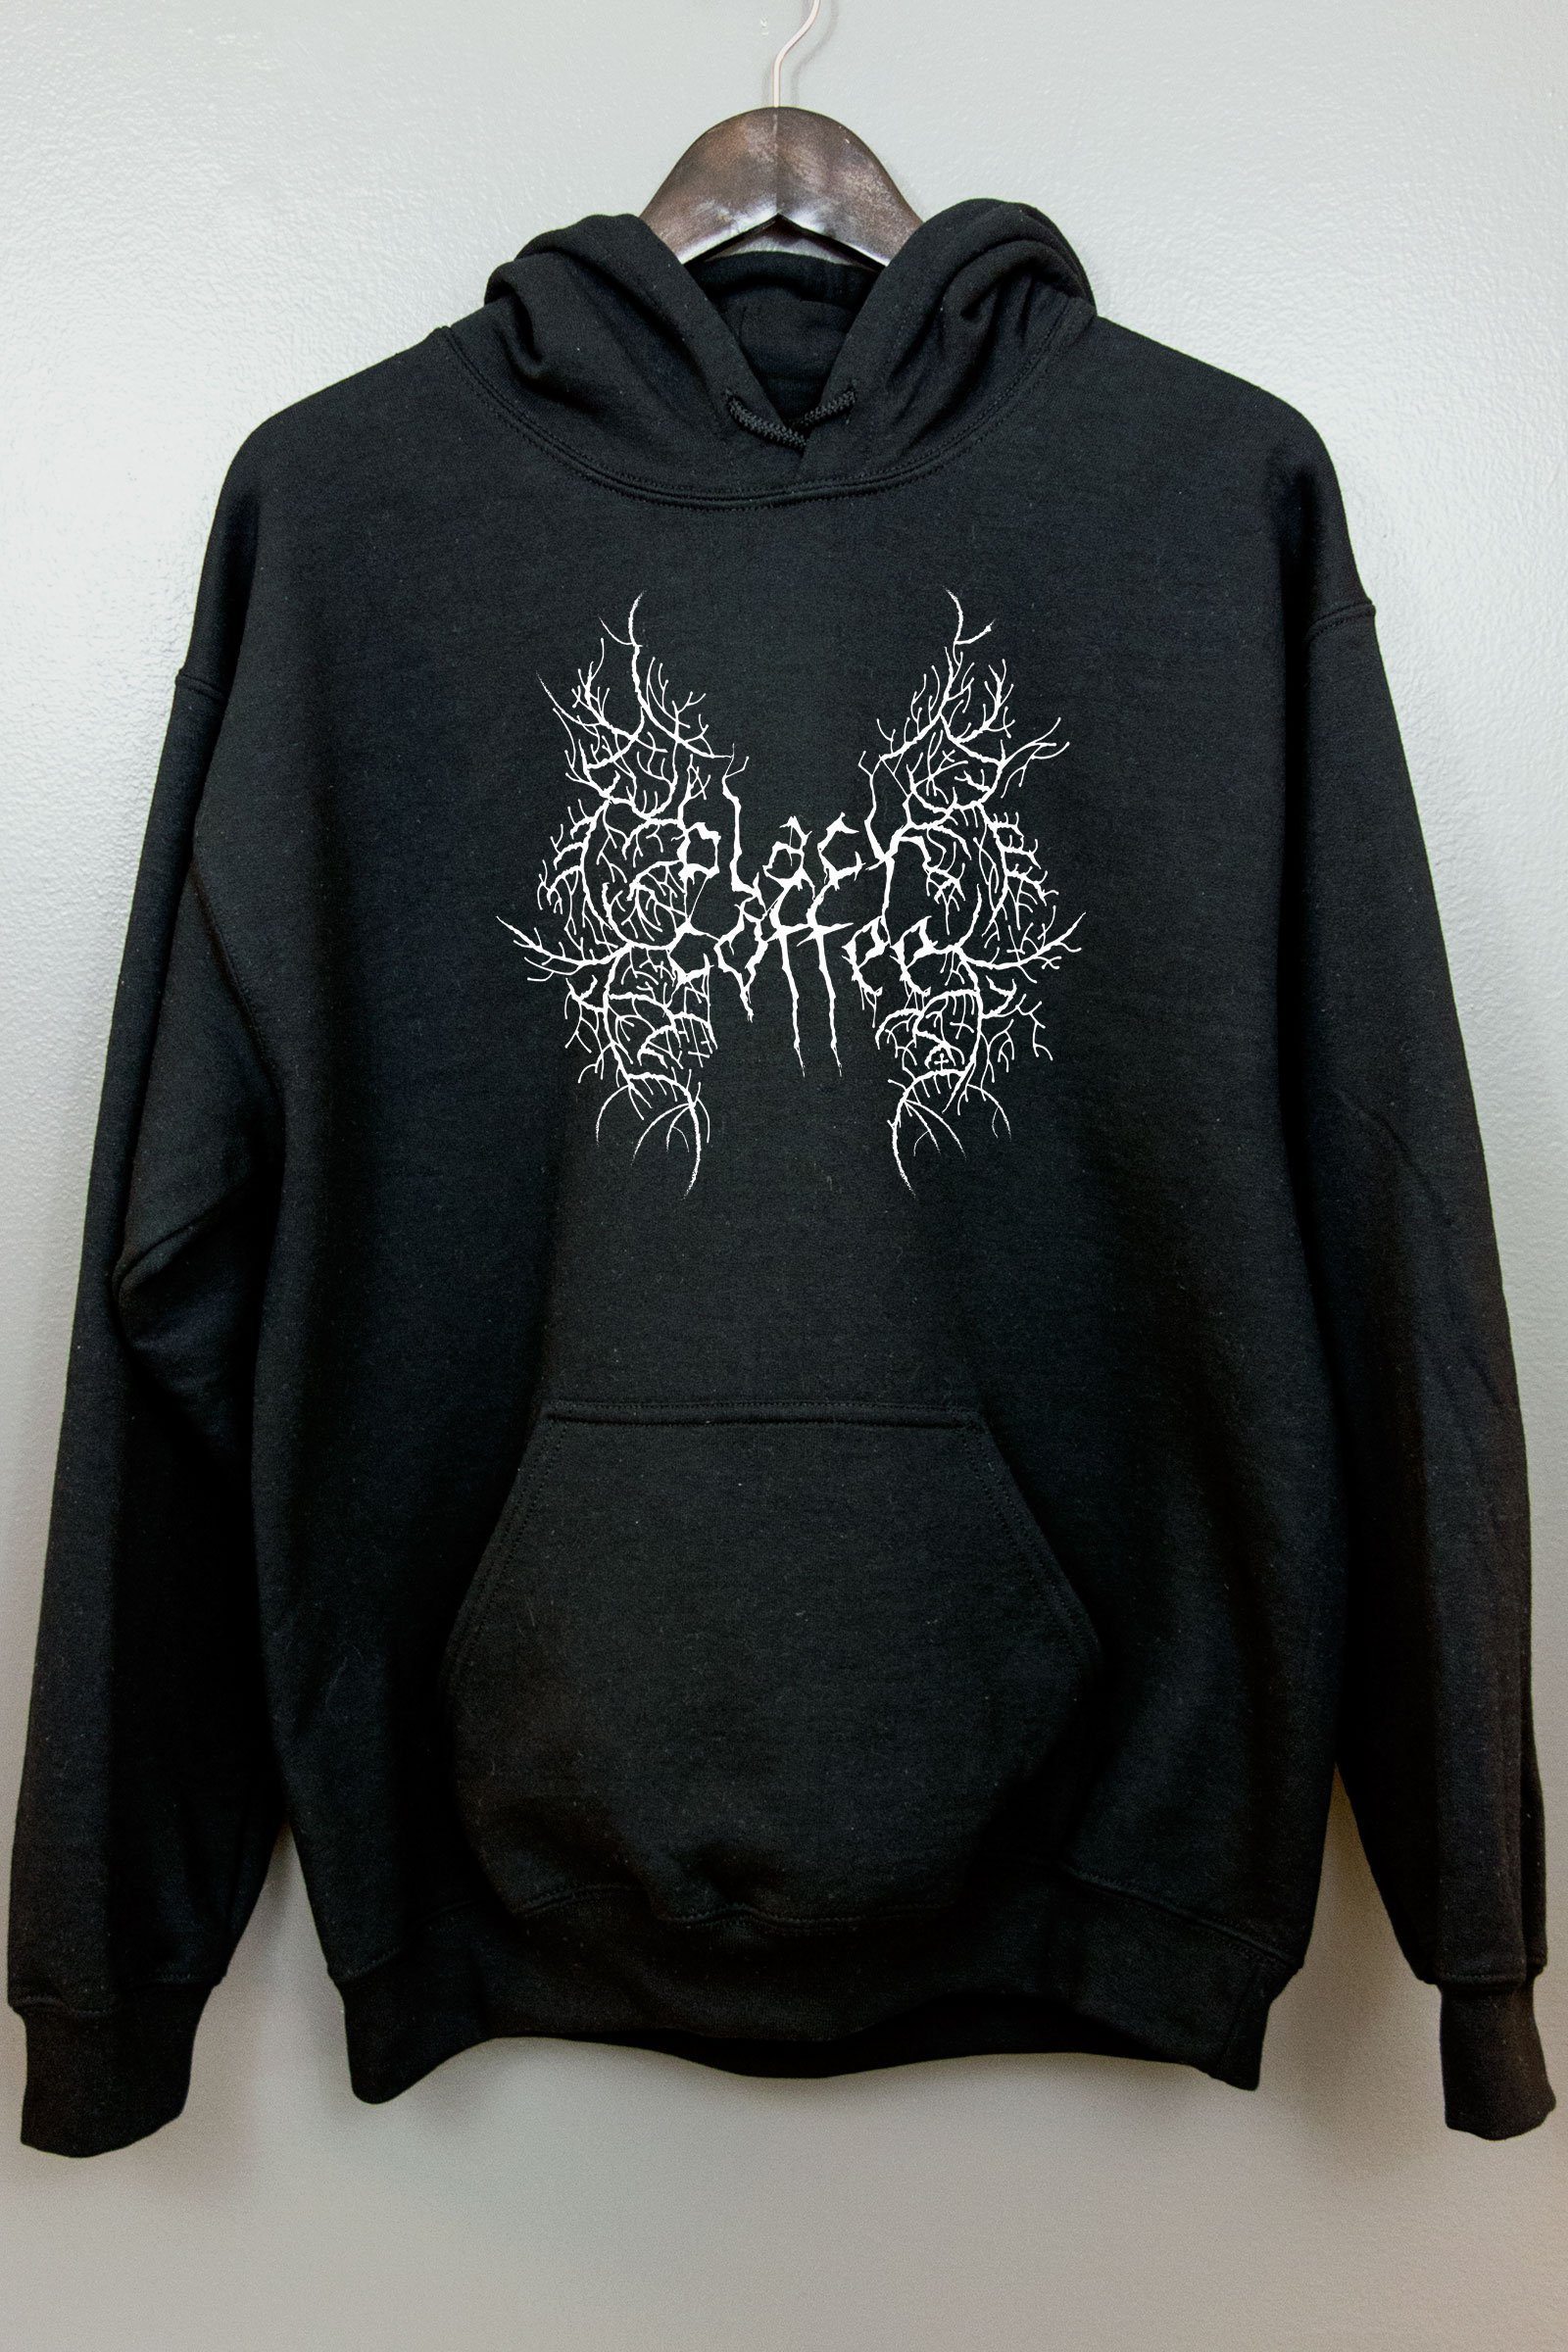 Black Metal Hoodie Hooded Sweatshirt Gothic Clothing Nu Goth | Etsy